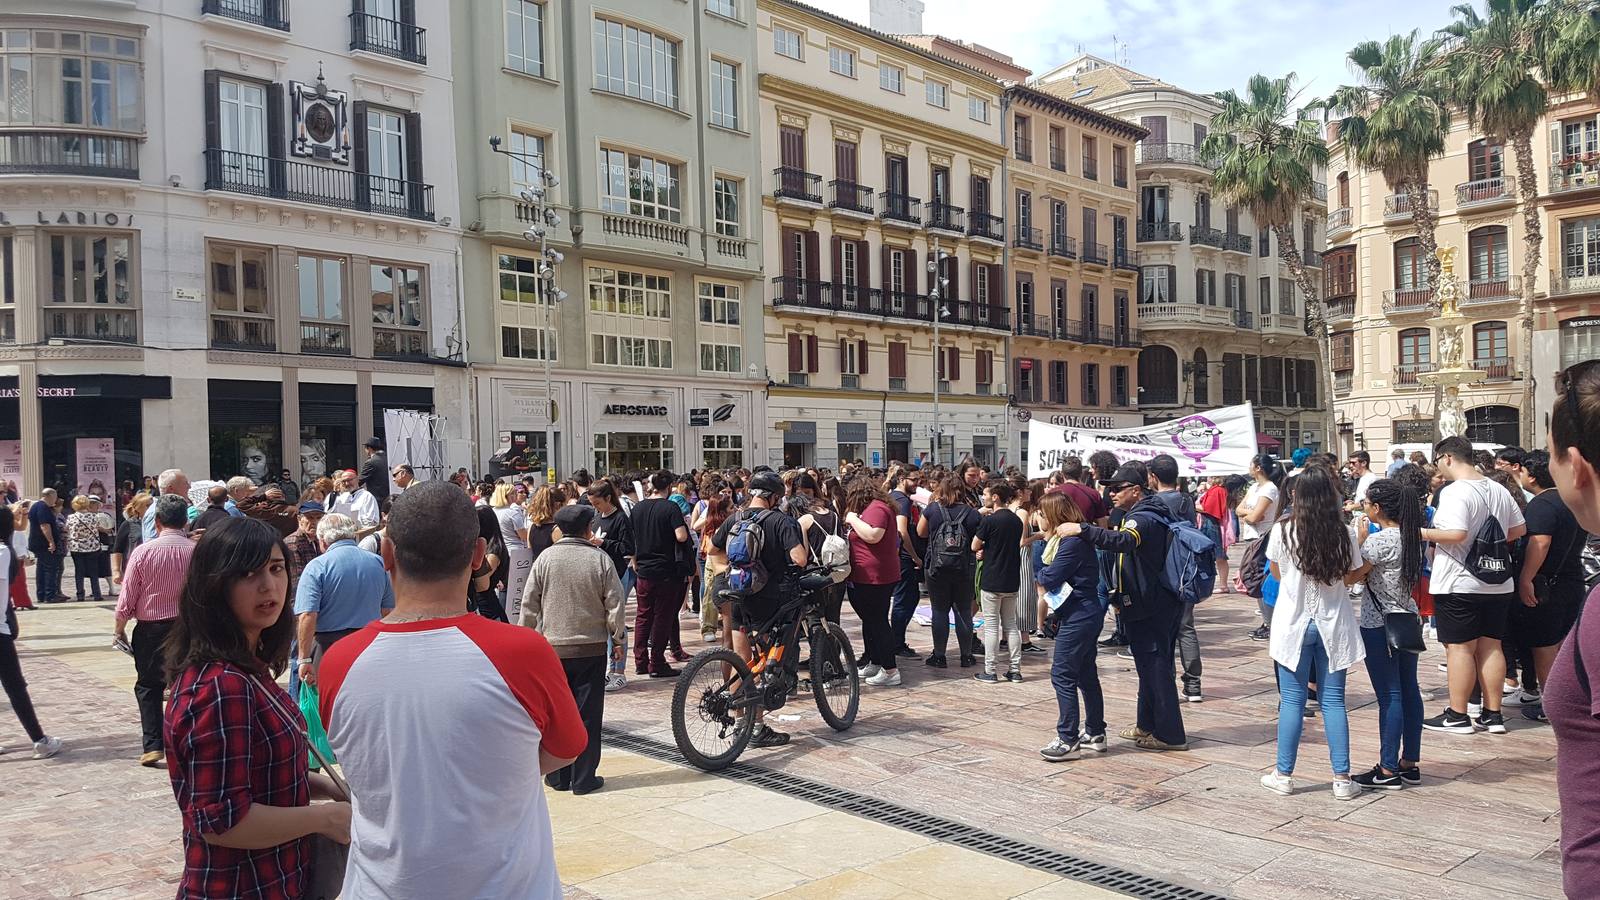 Al mediodía de este jueves se celebraba una concentración en la Plaza de la Constitución que finalmente terminaba en manifestación por las calles del centro